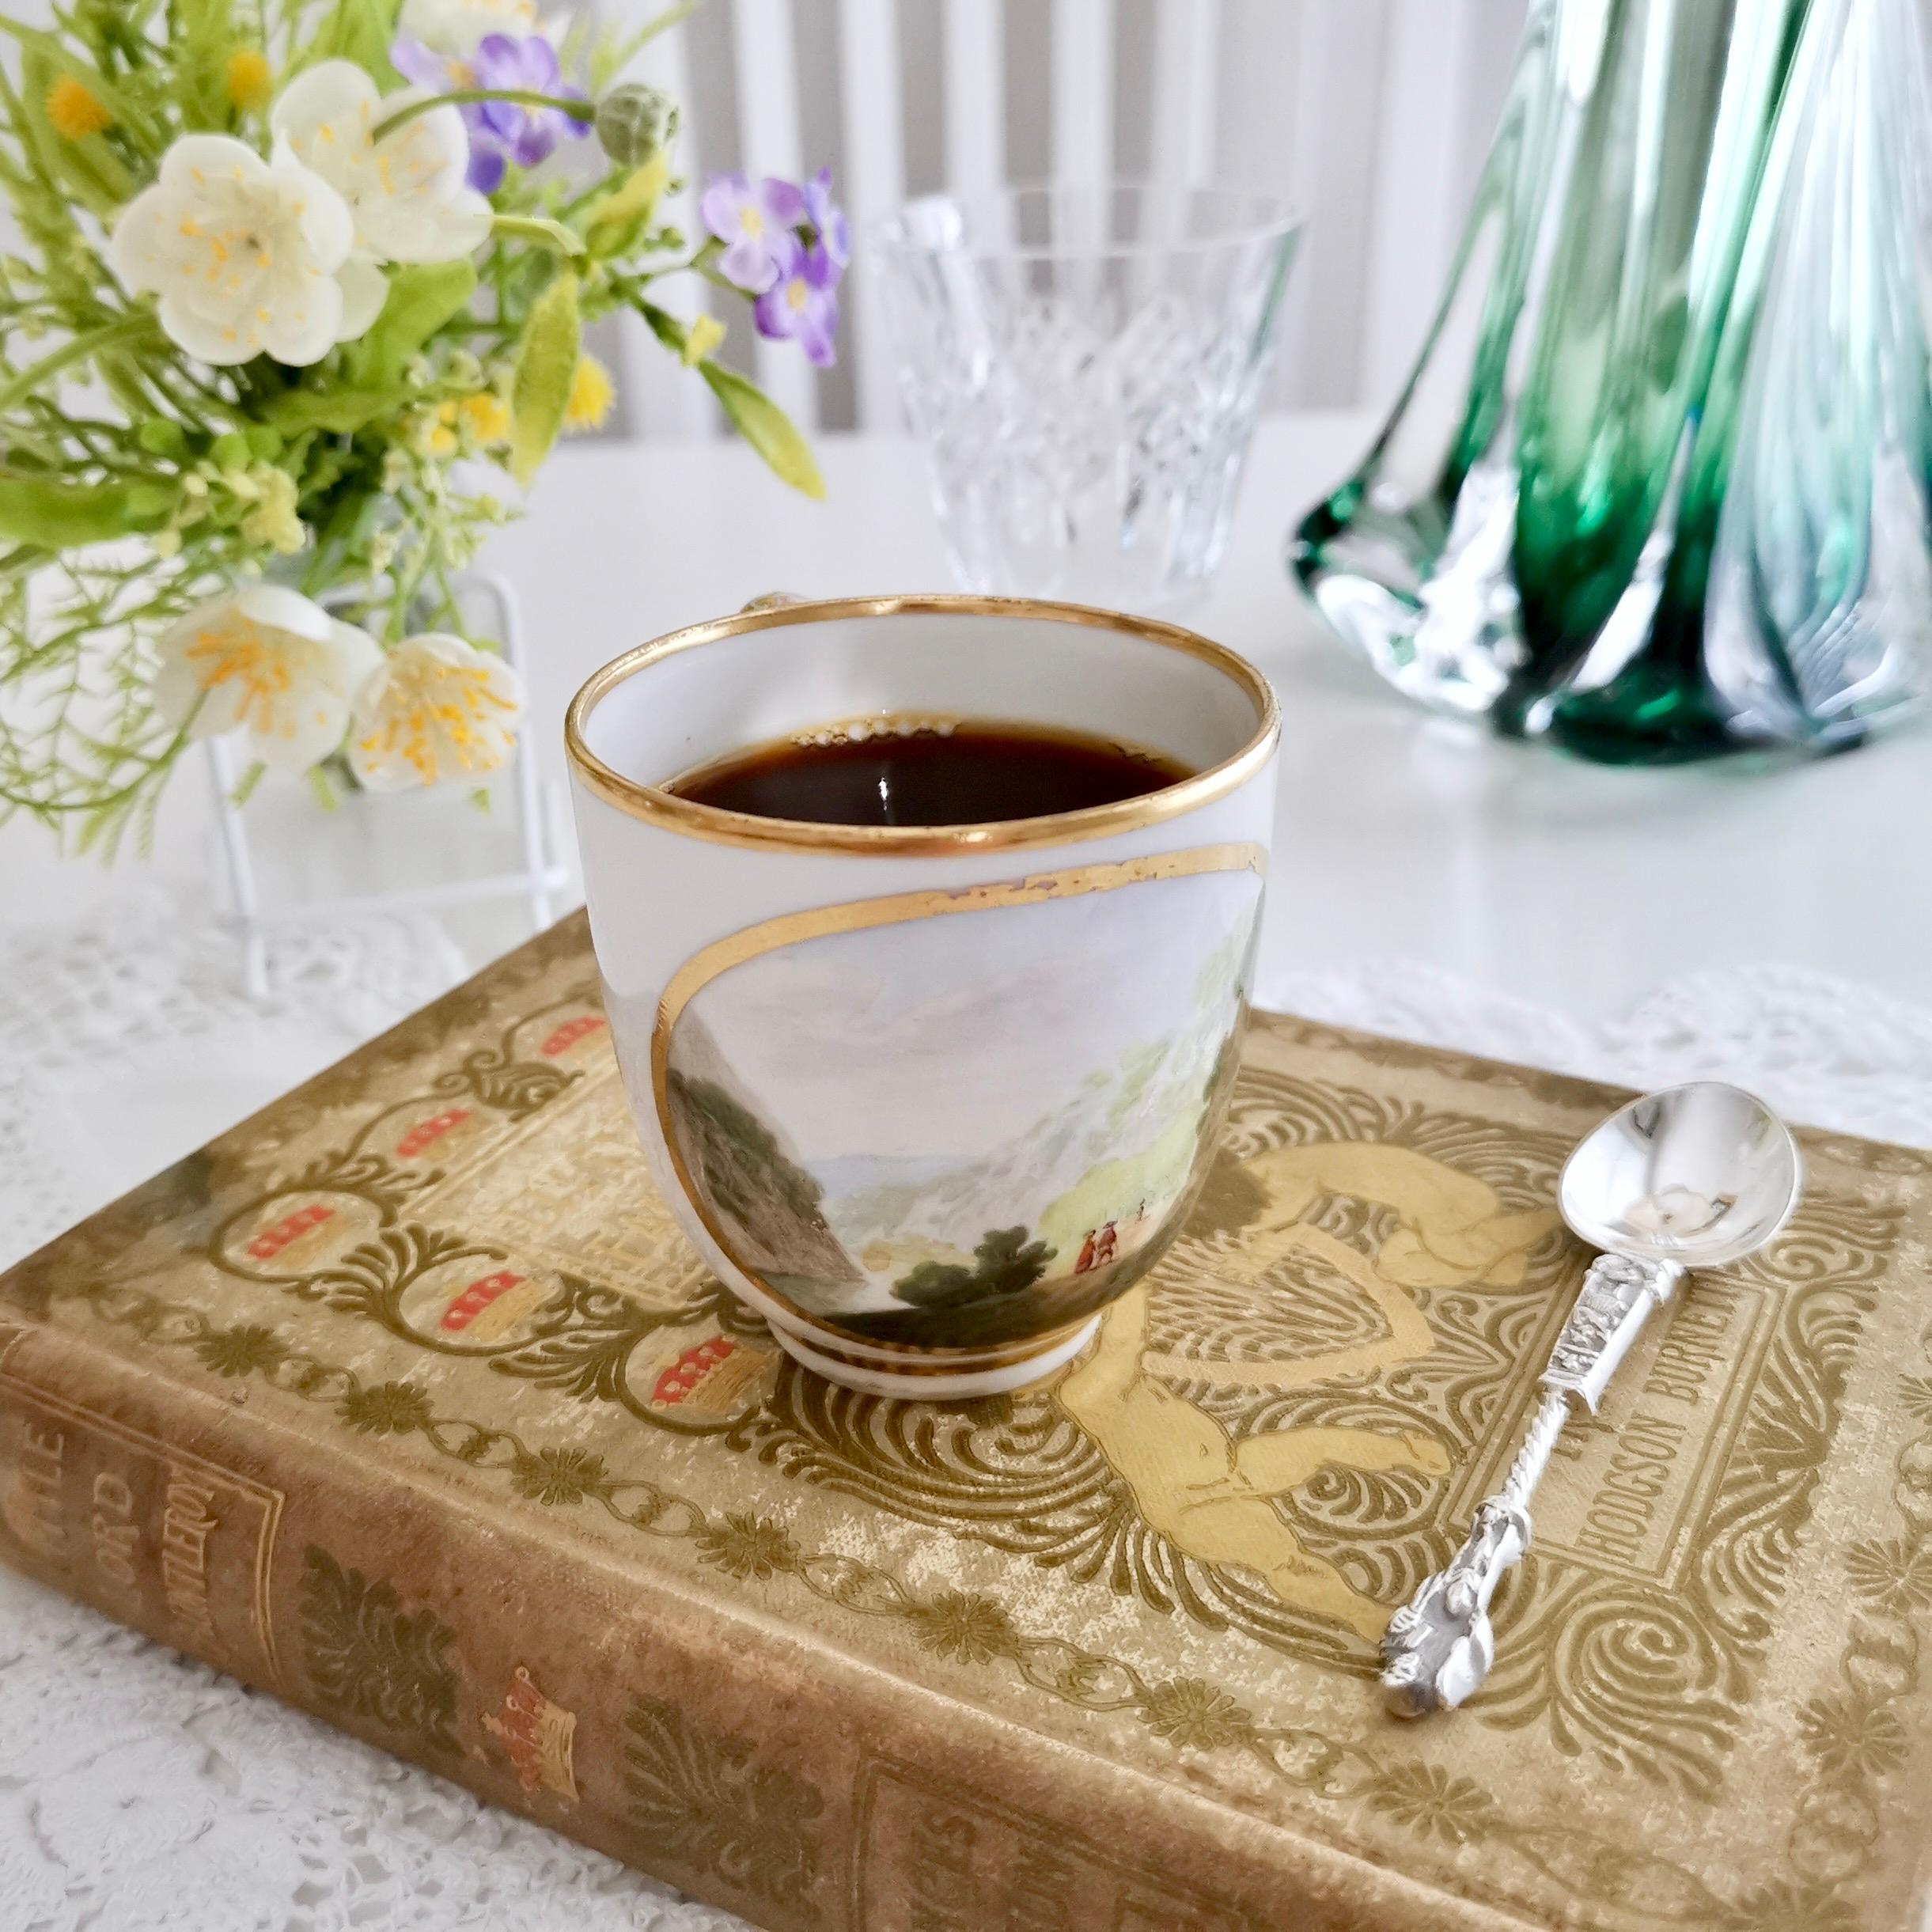 Il s'agit d'une très rare et étonnante petite tasse à café orpheline fabriquée par Derby vers 1790. La tasse a un fond blanc, des bords dorés simples et un étonnant paysage de montagne nommé peint par Zachariah Boreman.
 
L'usine de Derby,